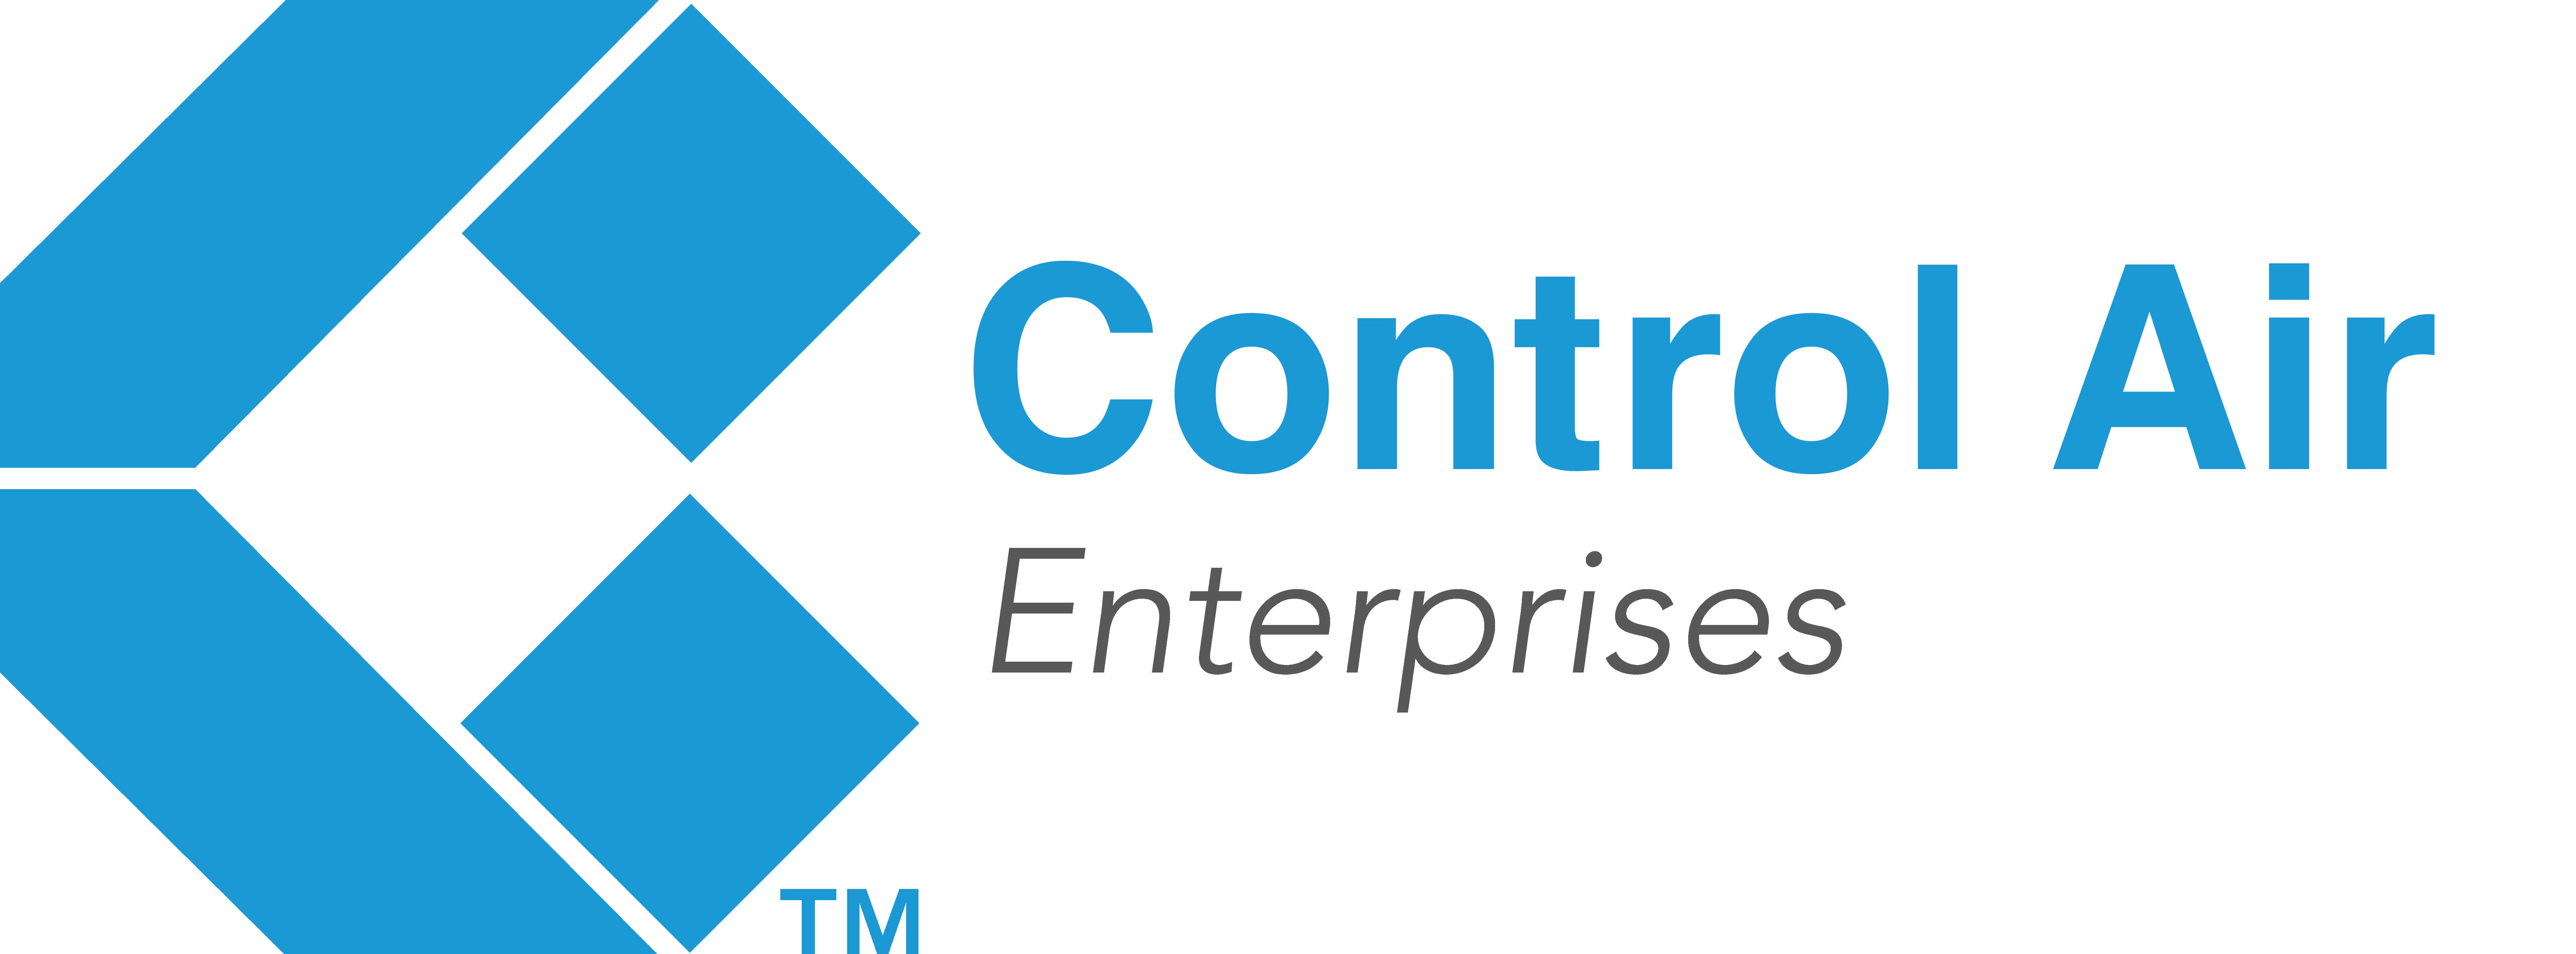 Control Air Enterprises LLC.